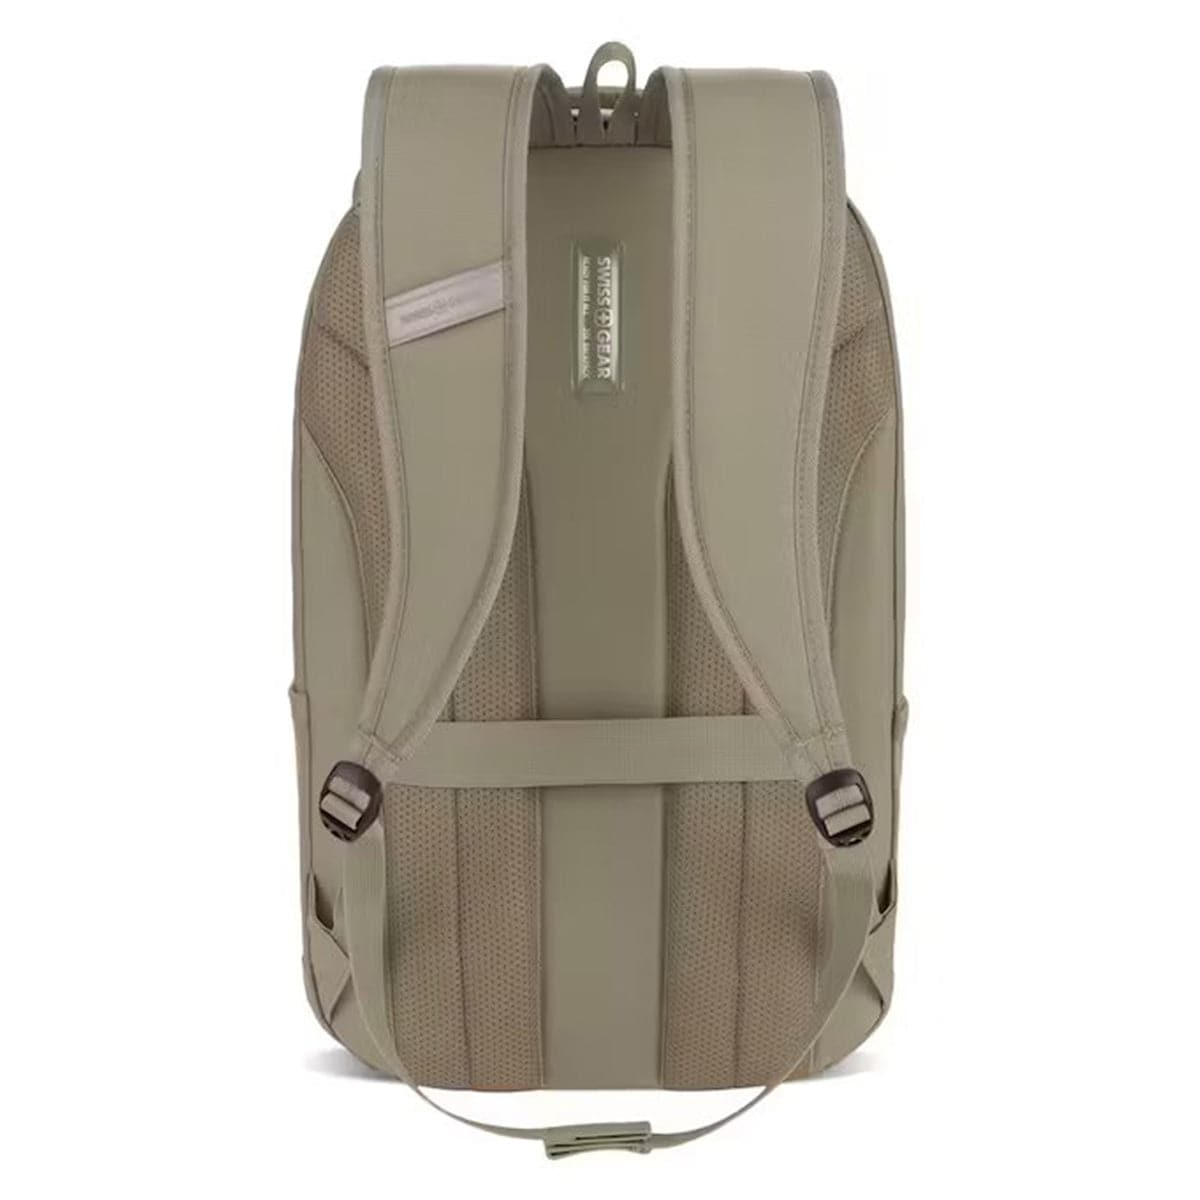 SwissGear 16" Laptop Backpack